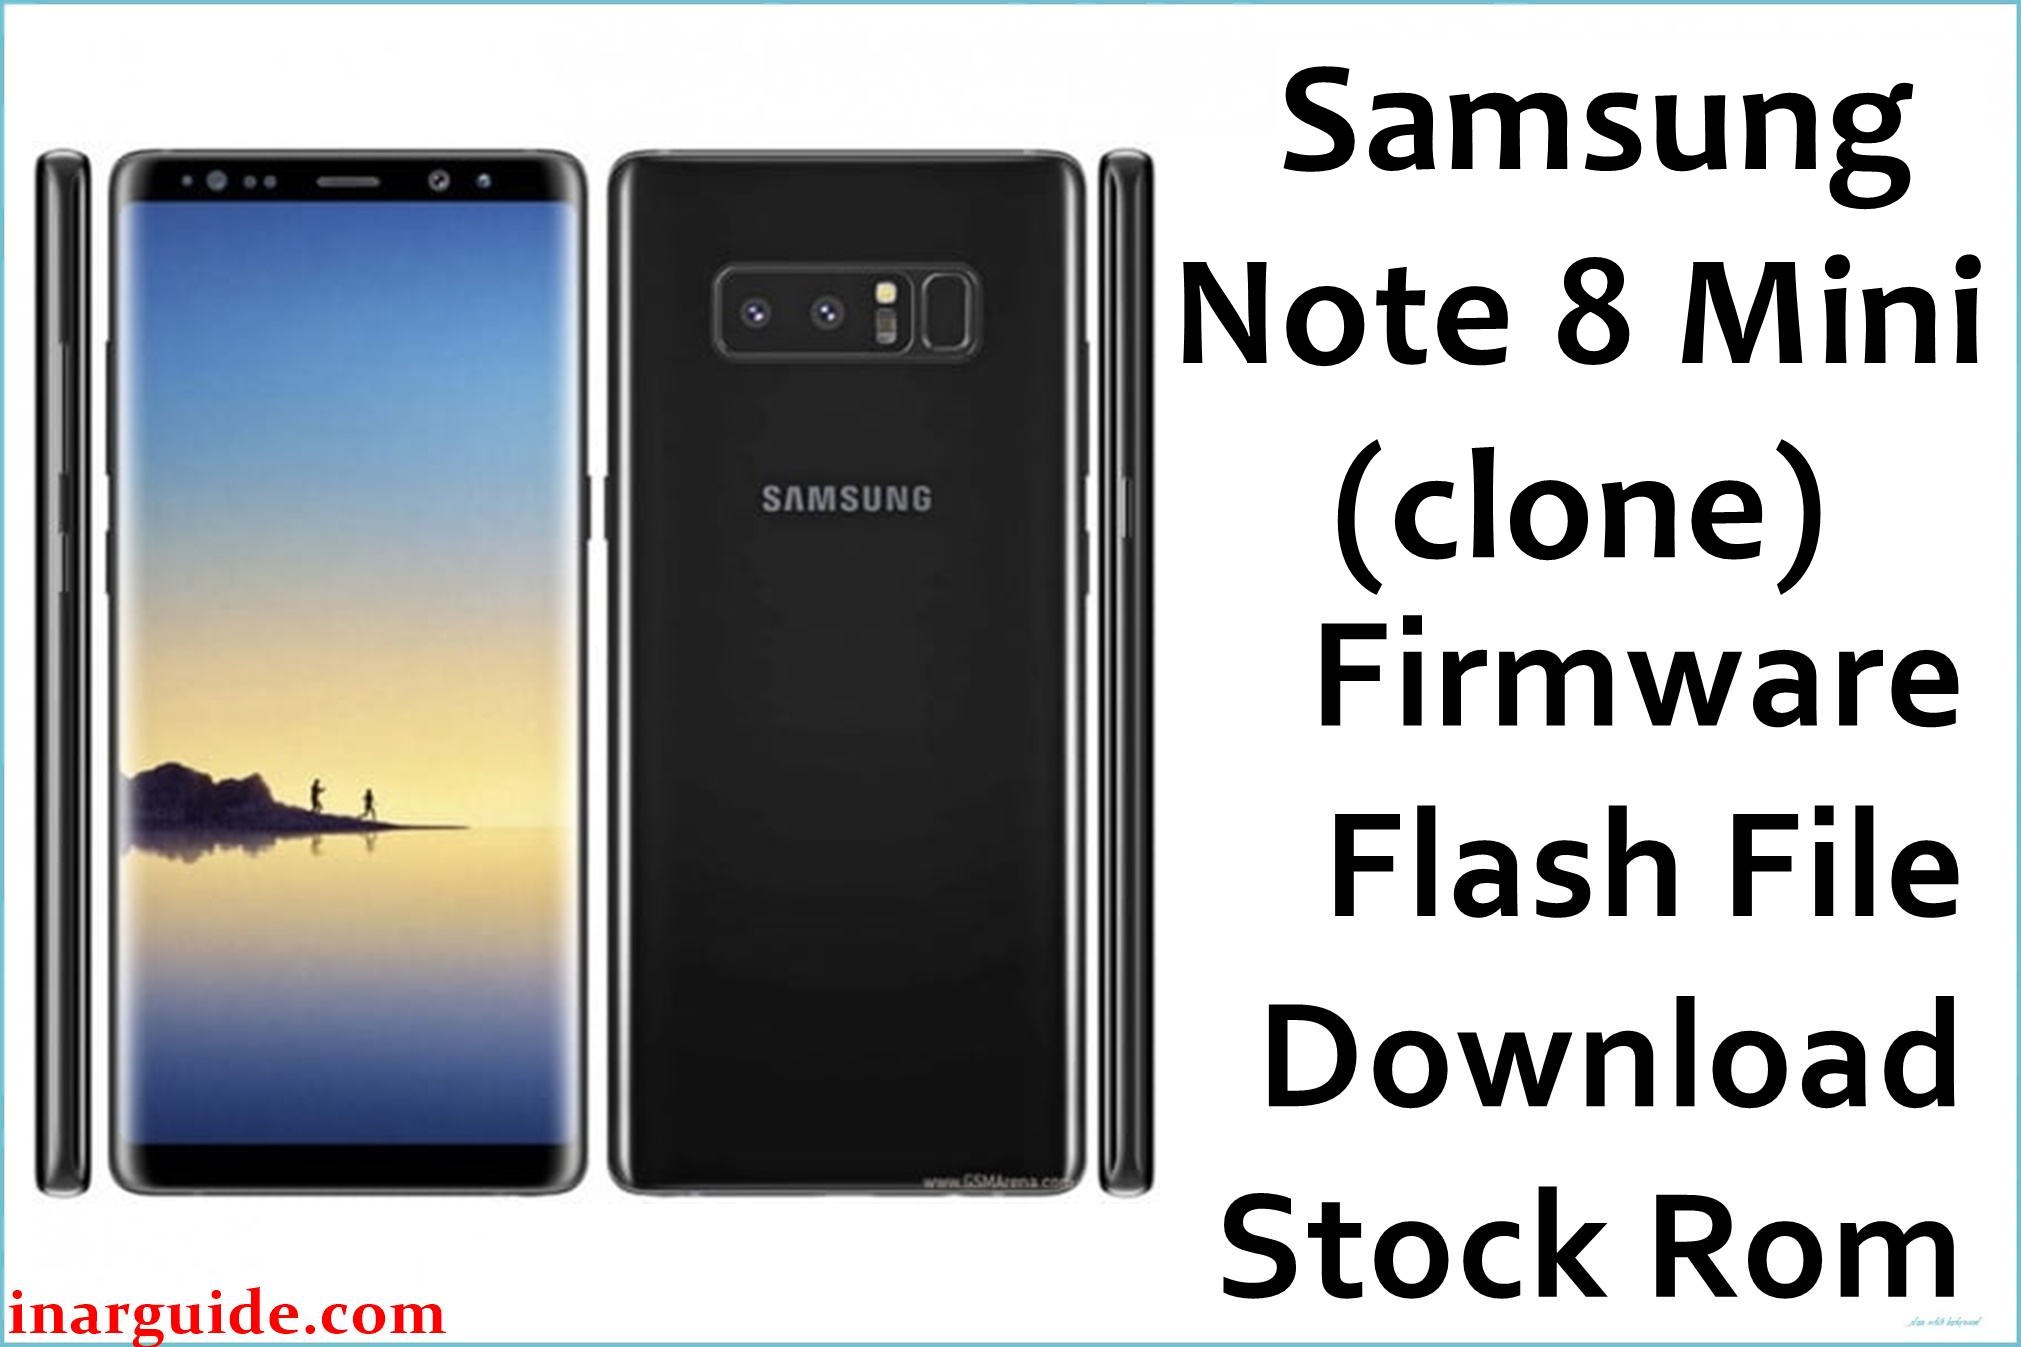 Samsung Note 8 Mini clone